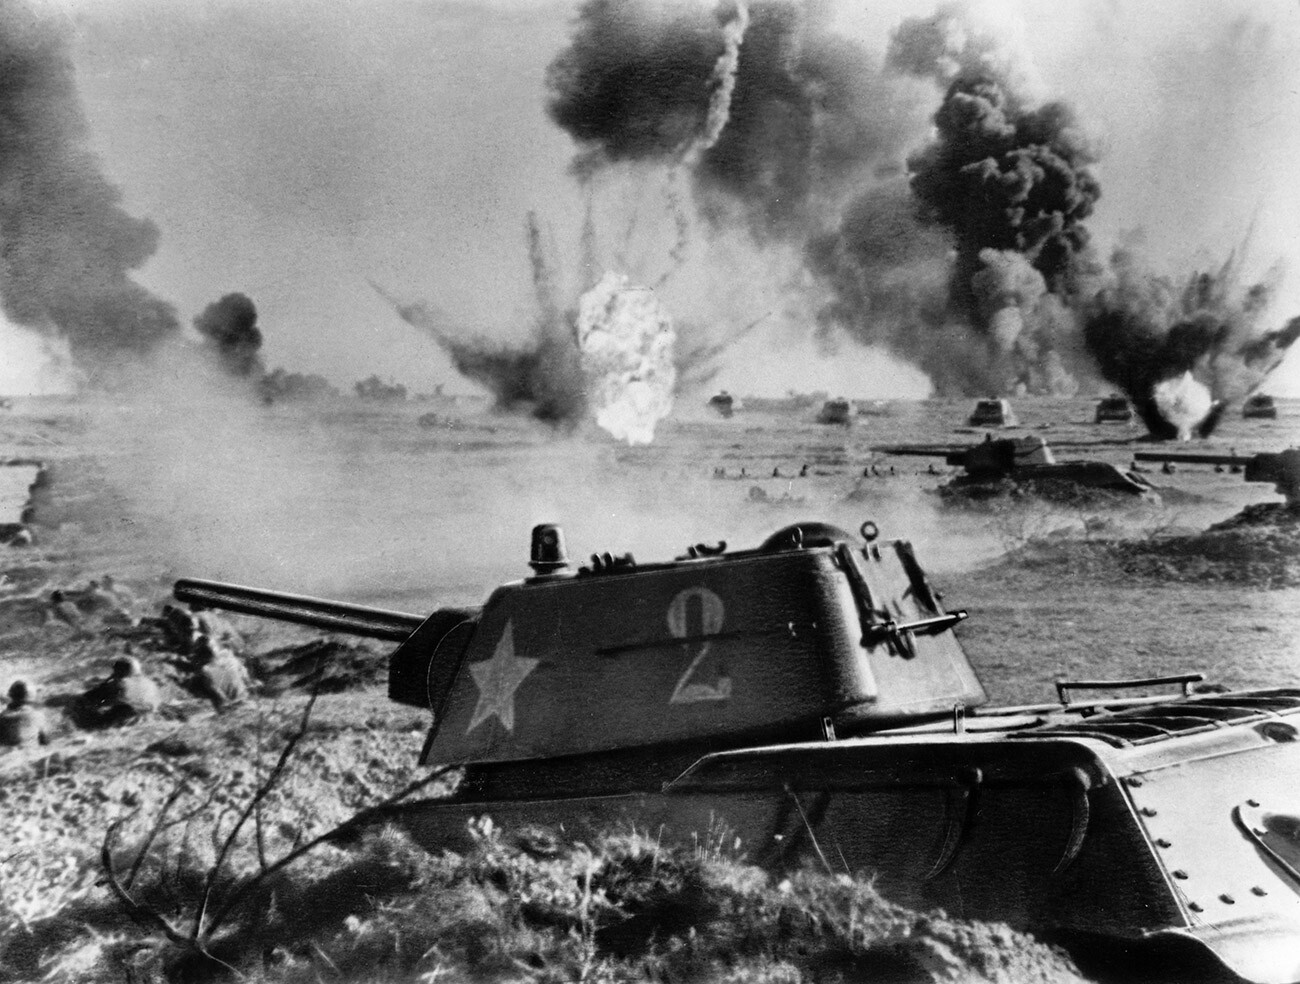 Schlacht um Stalingrad, sowjetische T-34-Panzer in der Schlacht, 1942 oder 1943.